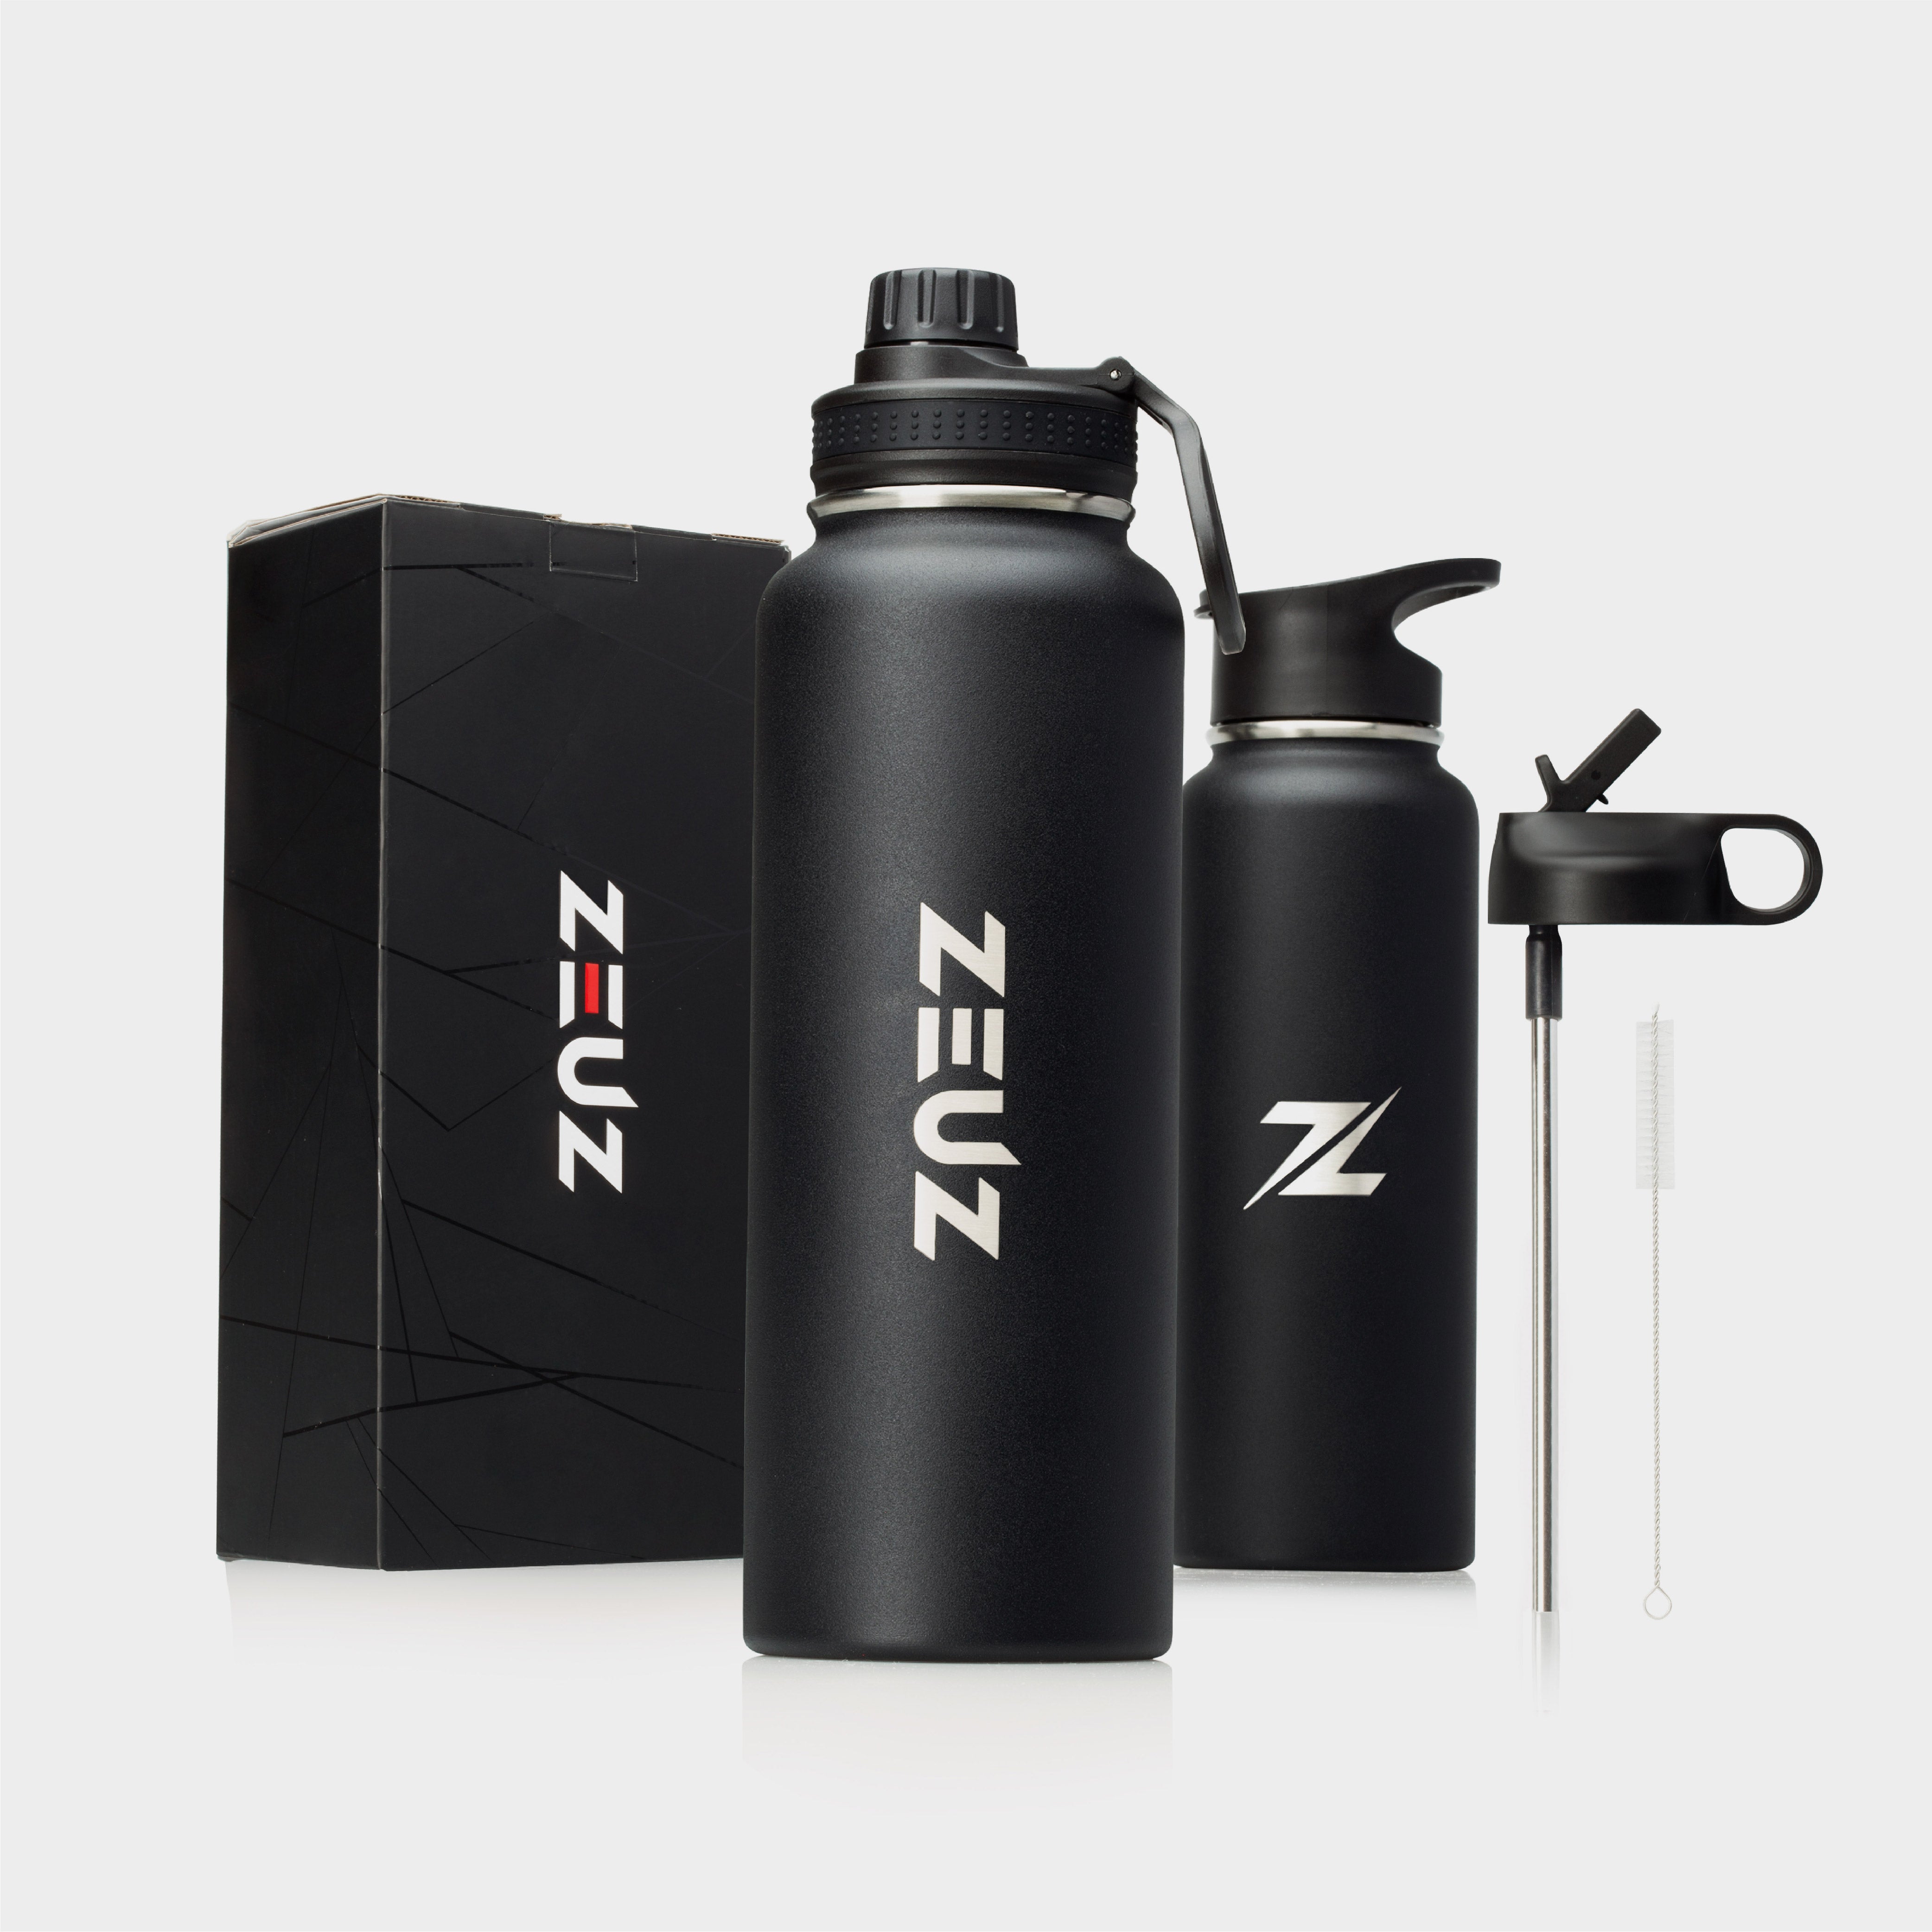 ZEUZ Premium Edelstahl Thermos flasche & Trink flasche - 1,2 Liter